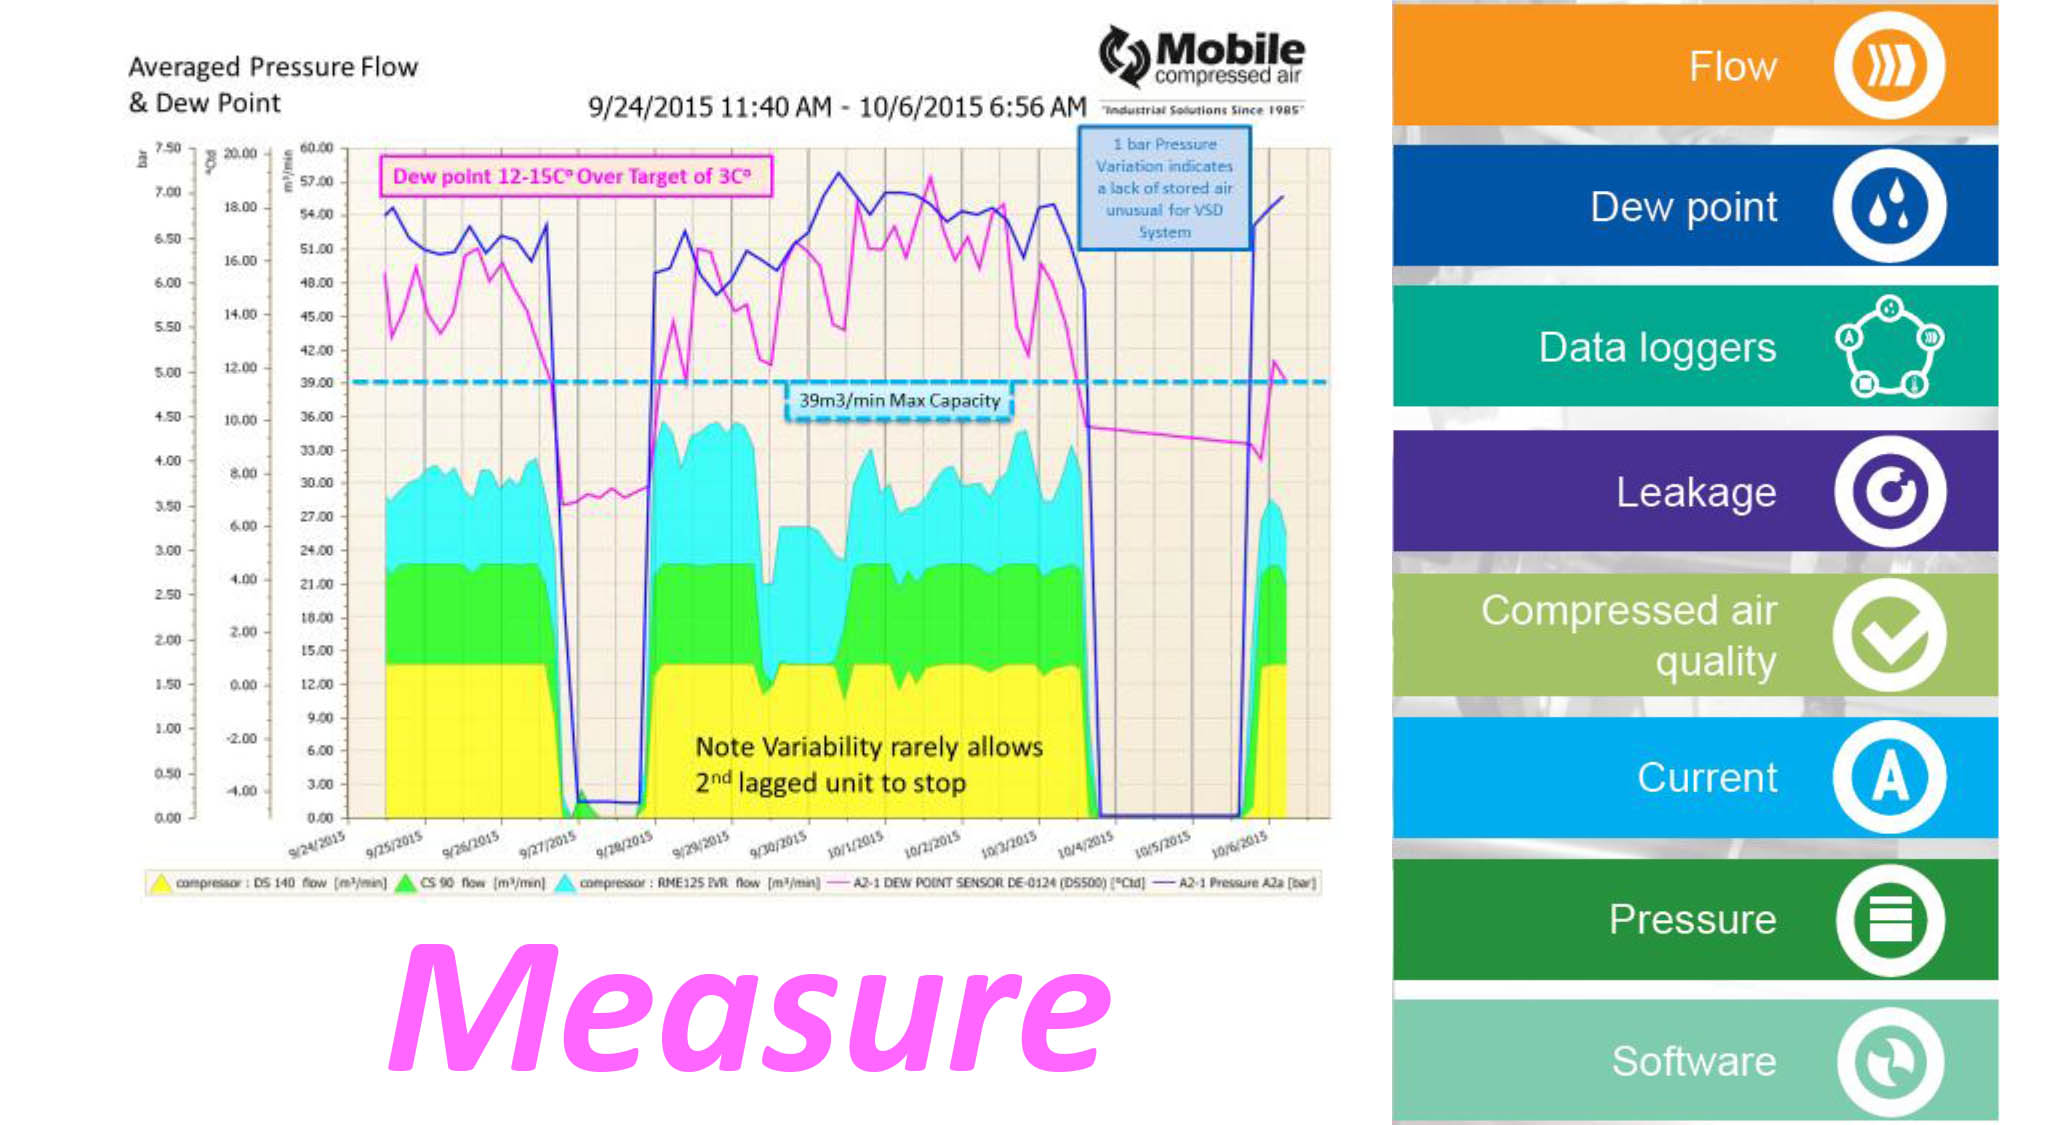 How do you measure compressed air quality?